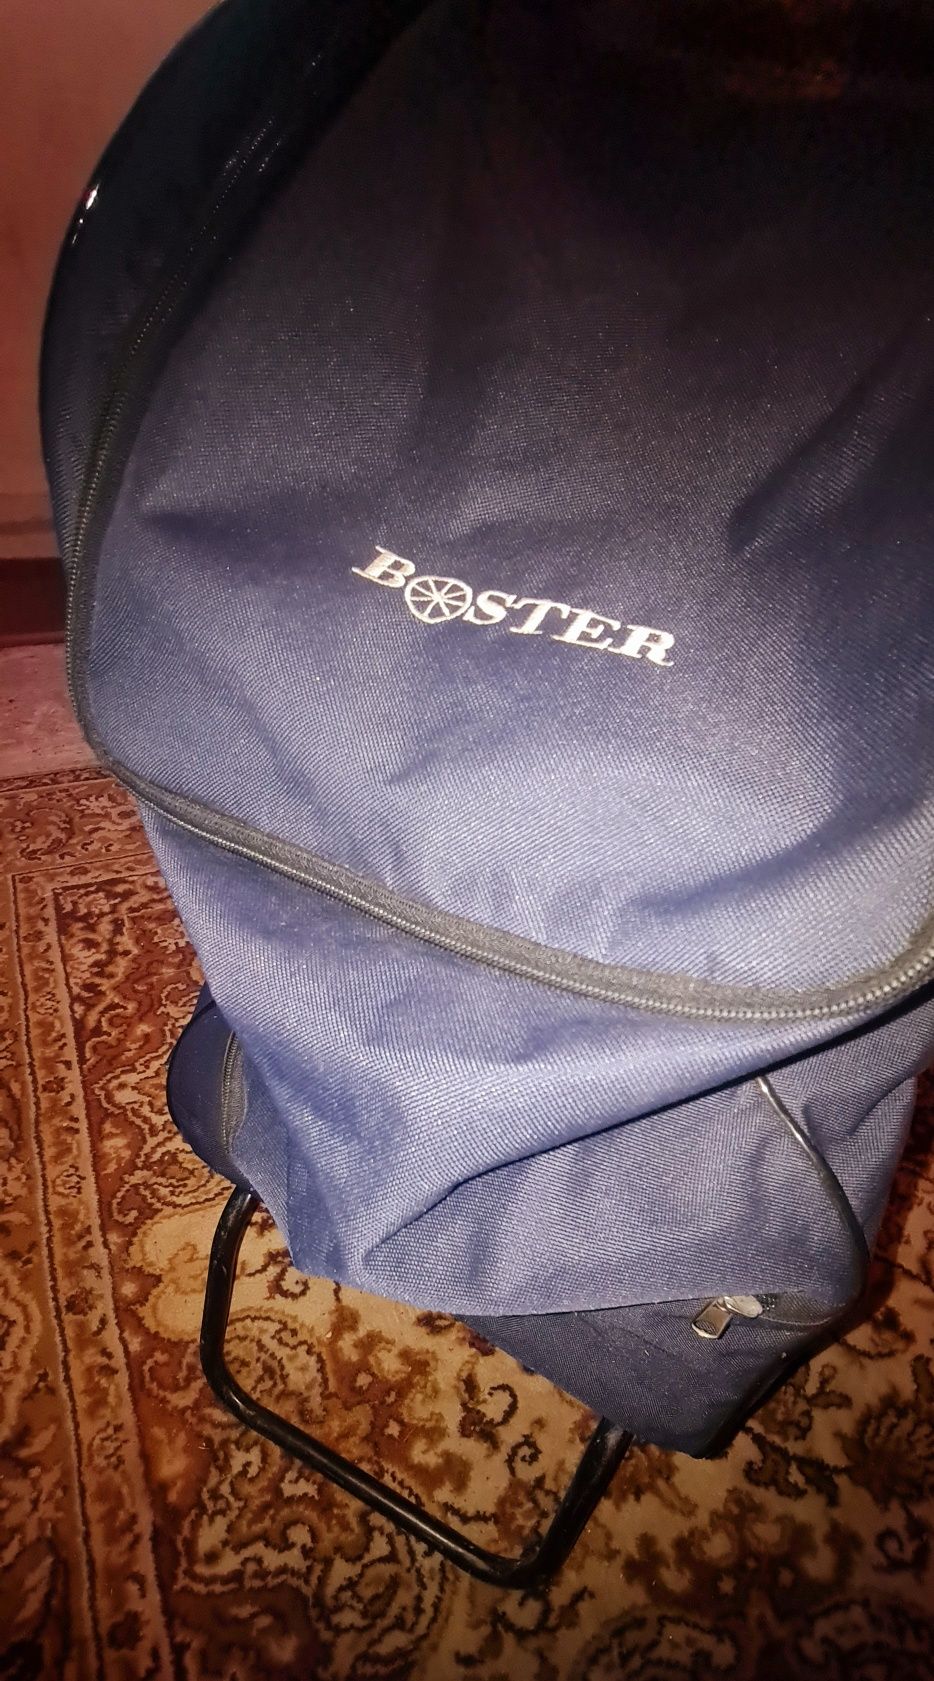 Hit Duża torba XL na kółkach marki Boster na zakupy.